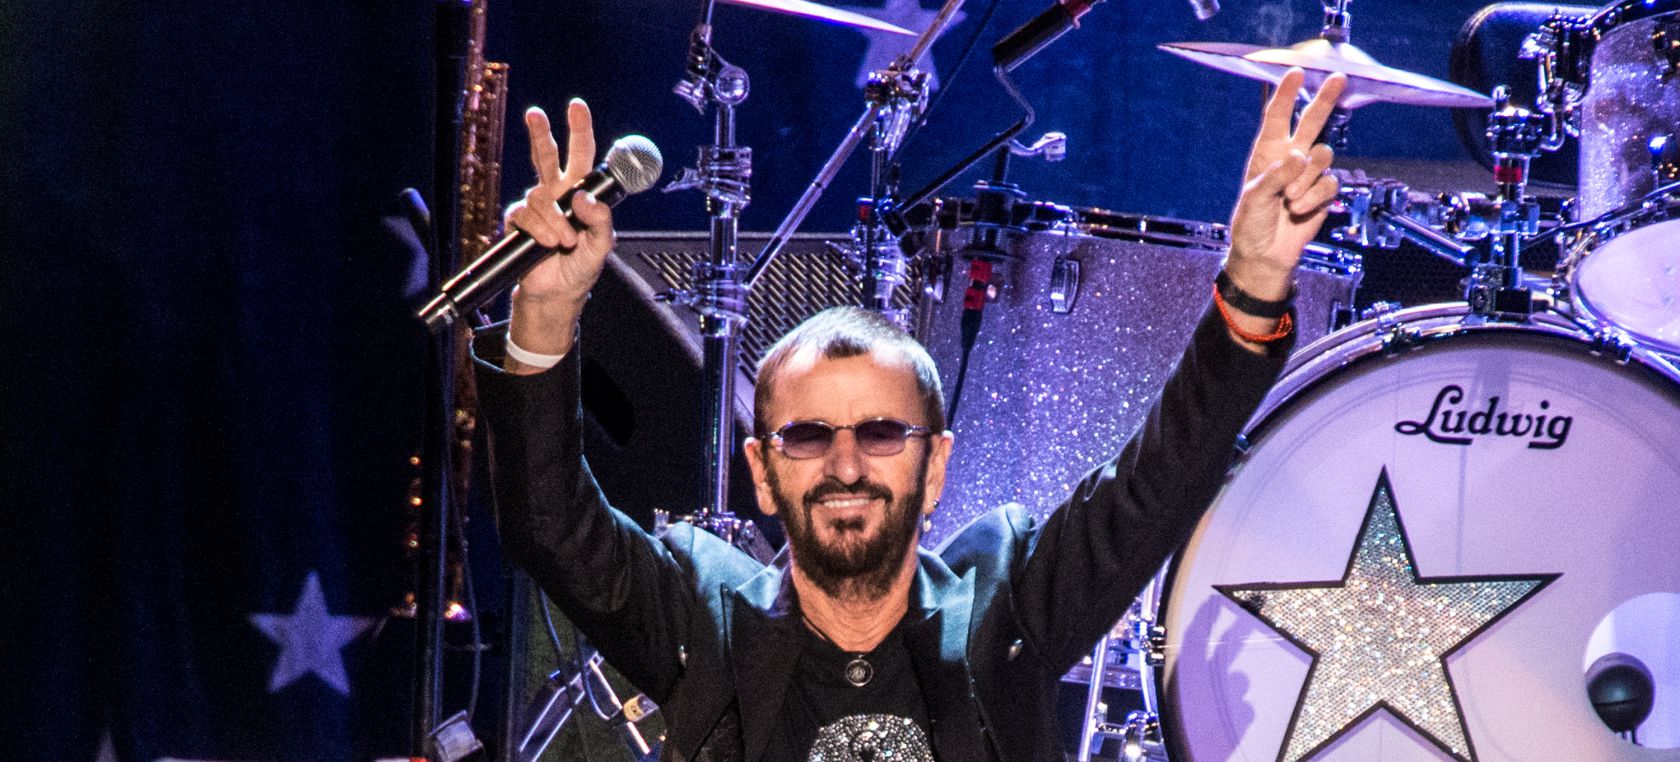 El productivo año de Ringo Starr: nuevo disco, libro y mucha pintura